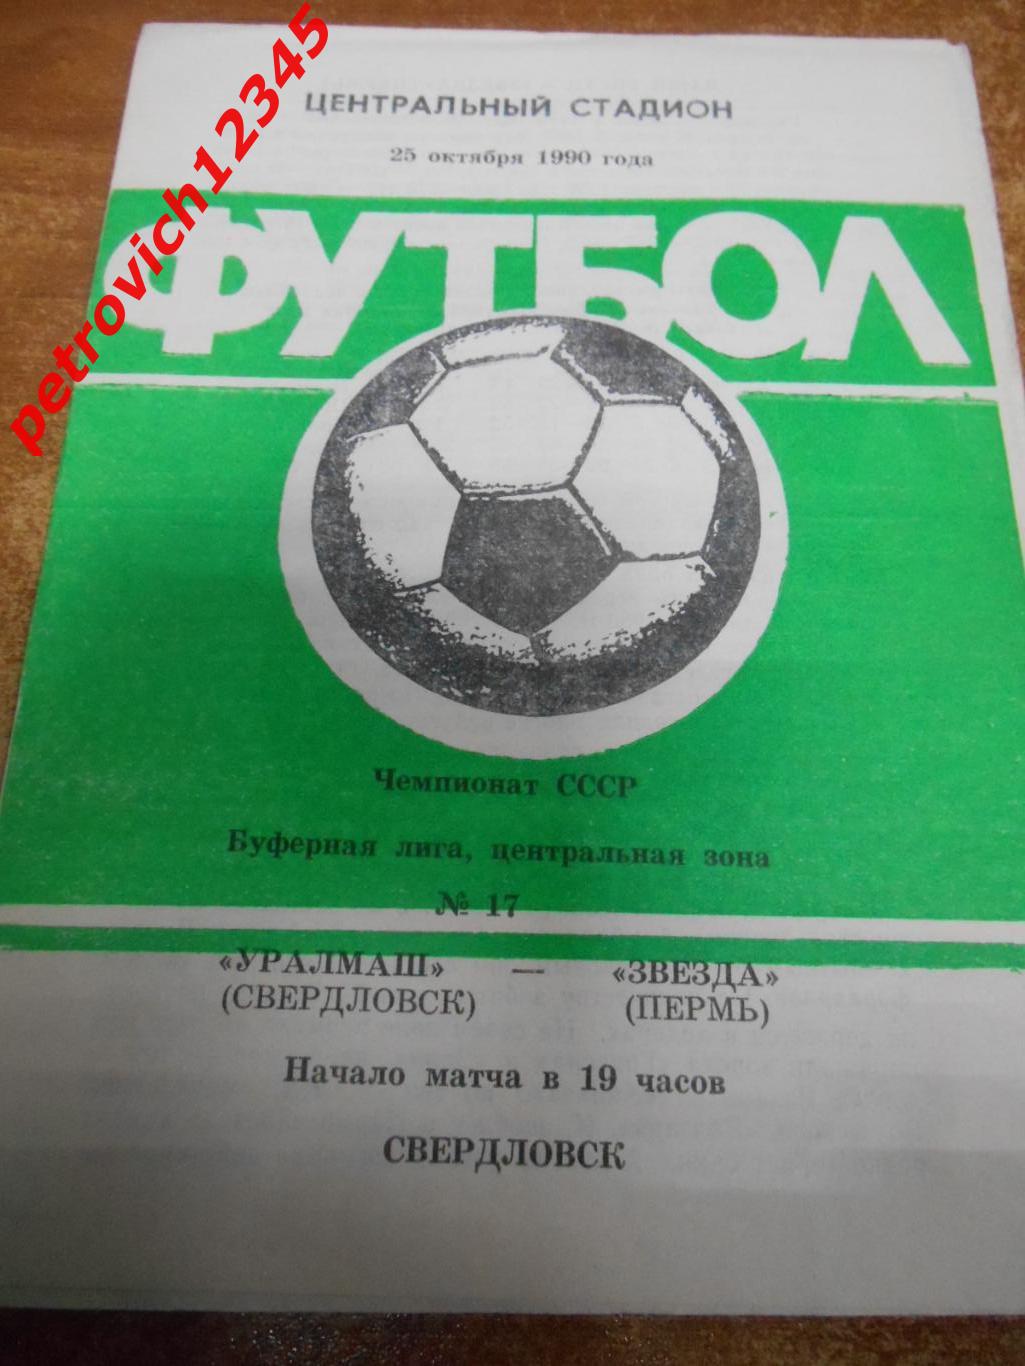 Уралмаш Свердловск - Звезда Пермь - 25 октября 1990г